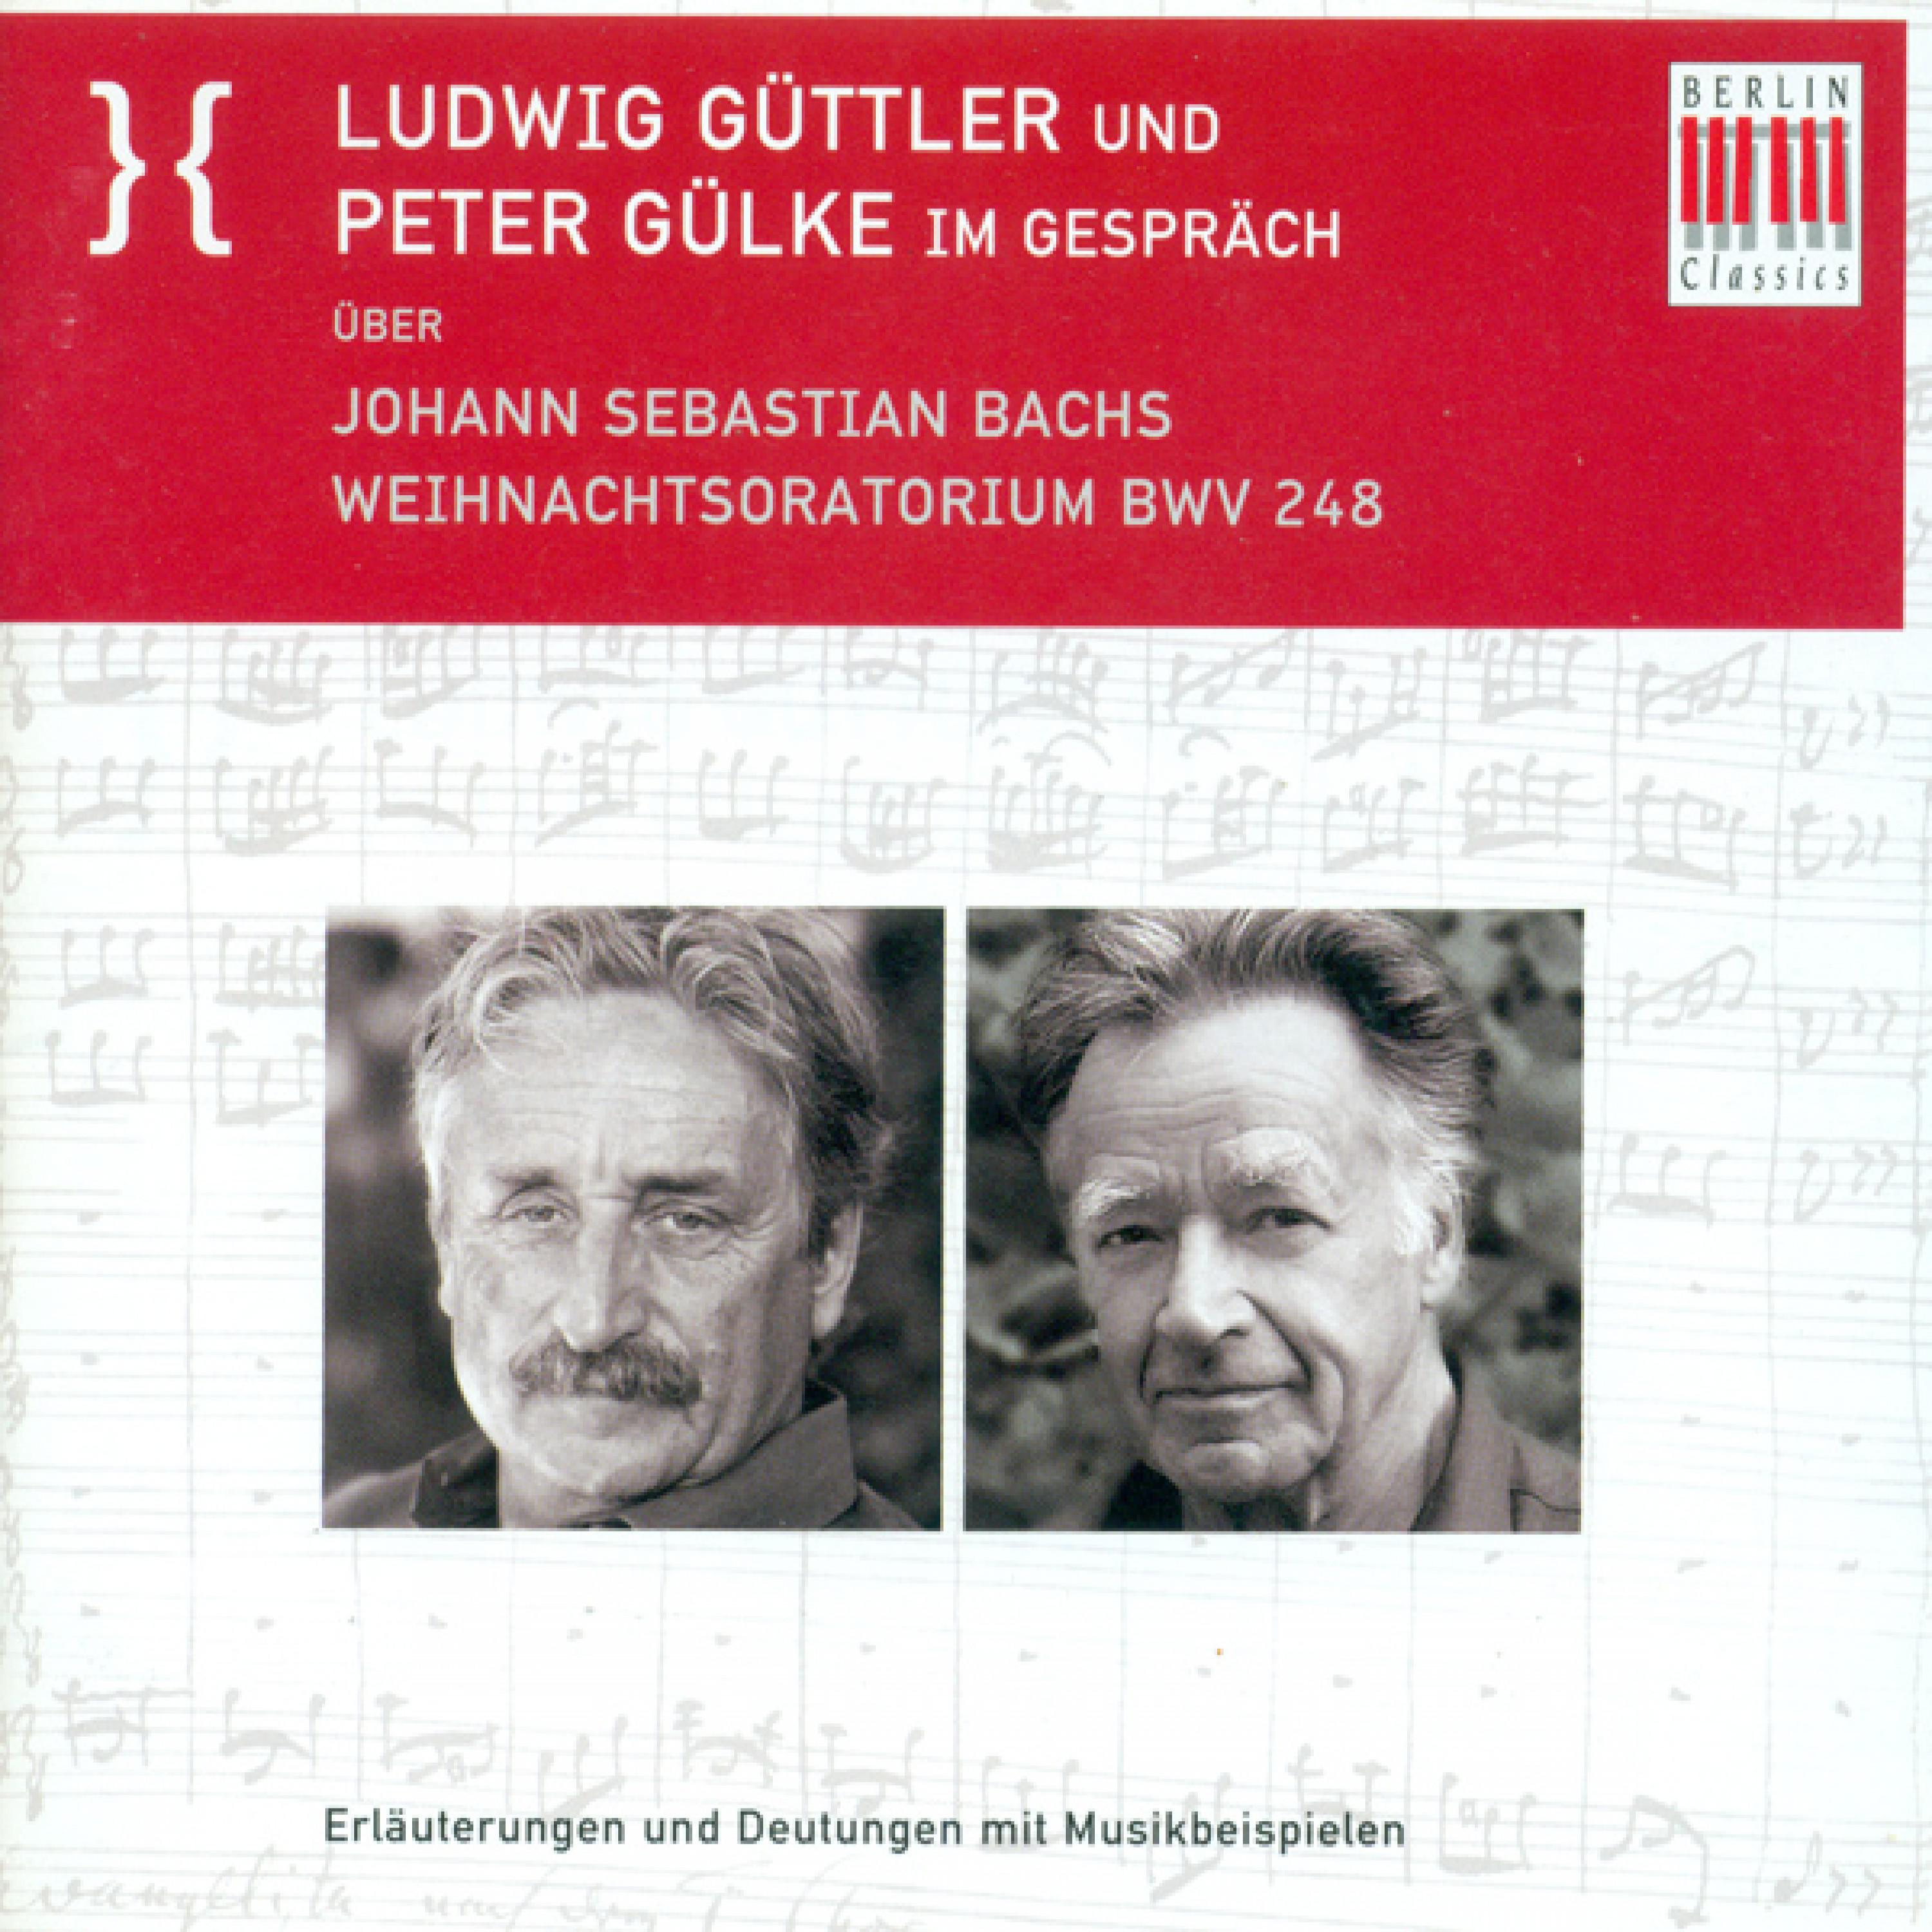 Ludwig Guttler und Peter Gulke Im Gesprach uber Johann Sebastian Bach's Weihnachtsoratorium BWV 248: Ich - Bekenntnisse und Parodieverfahren